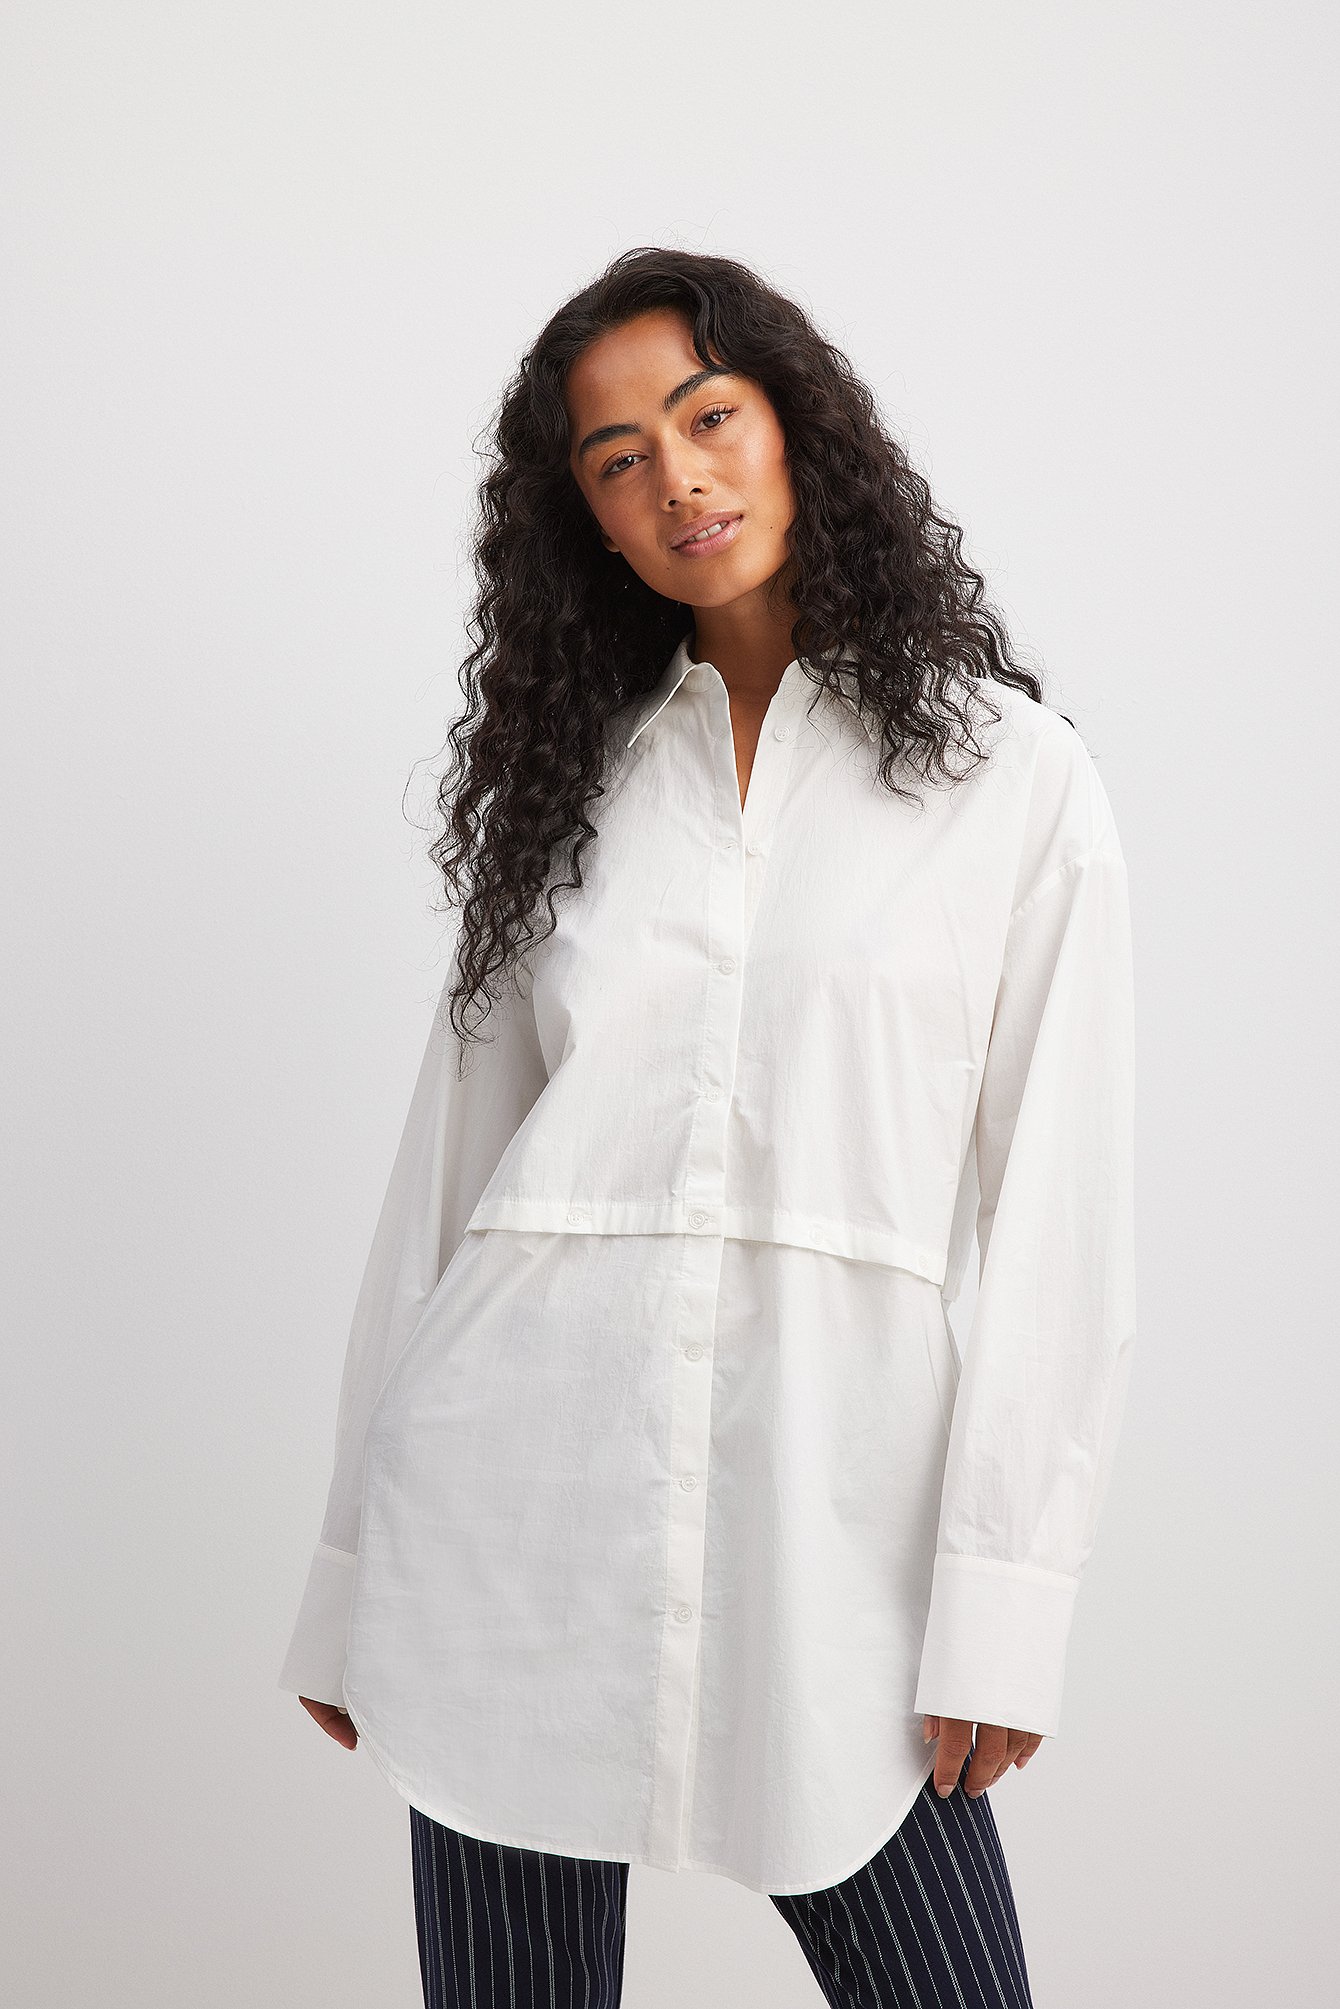 Billede af Chloé Schuterman x NA-KD Skjorte i overstørrelse til mange slags brug - White